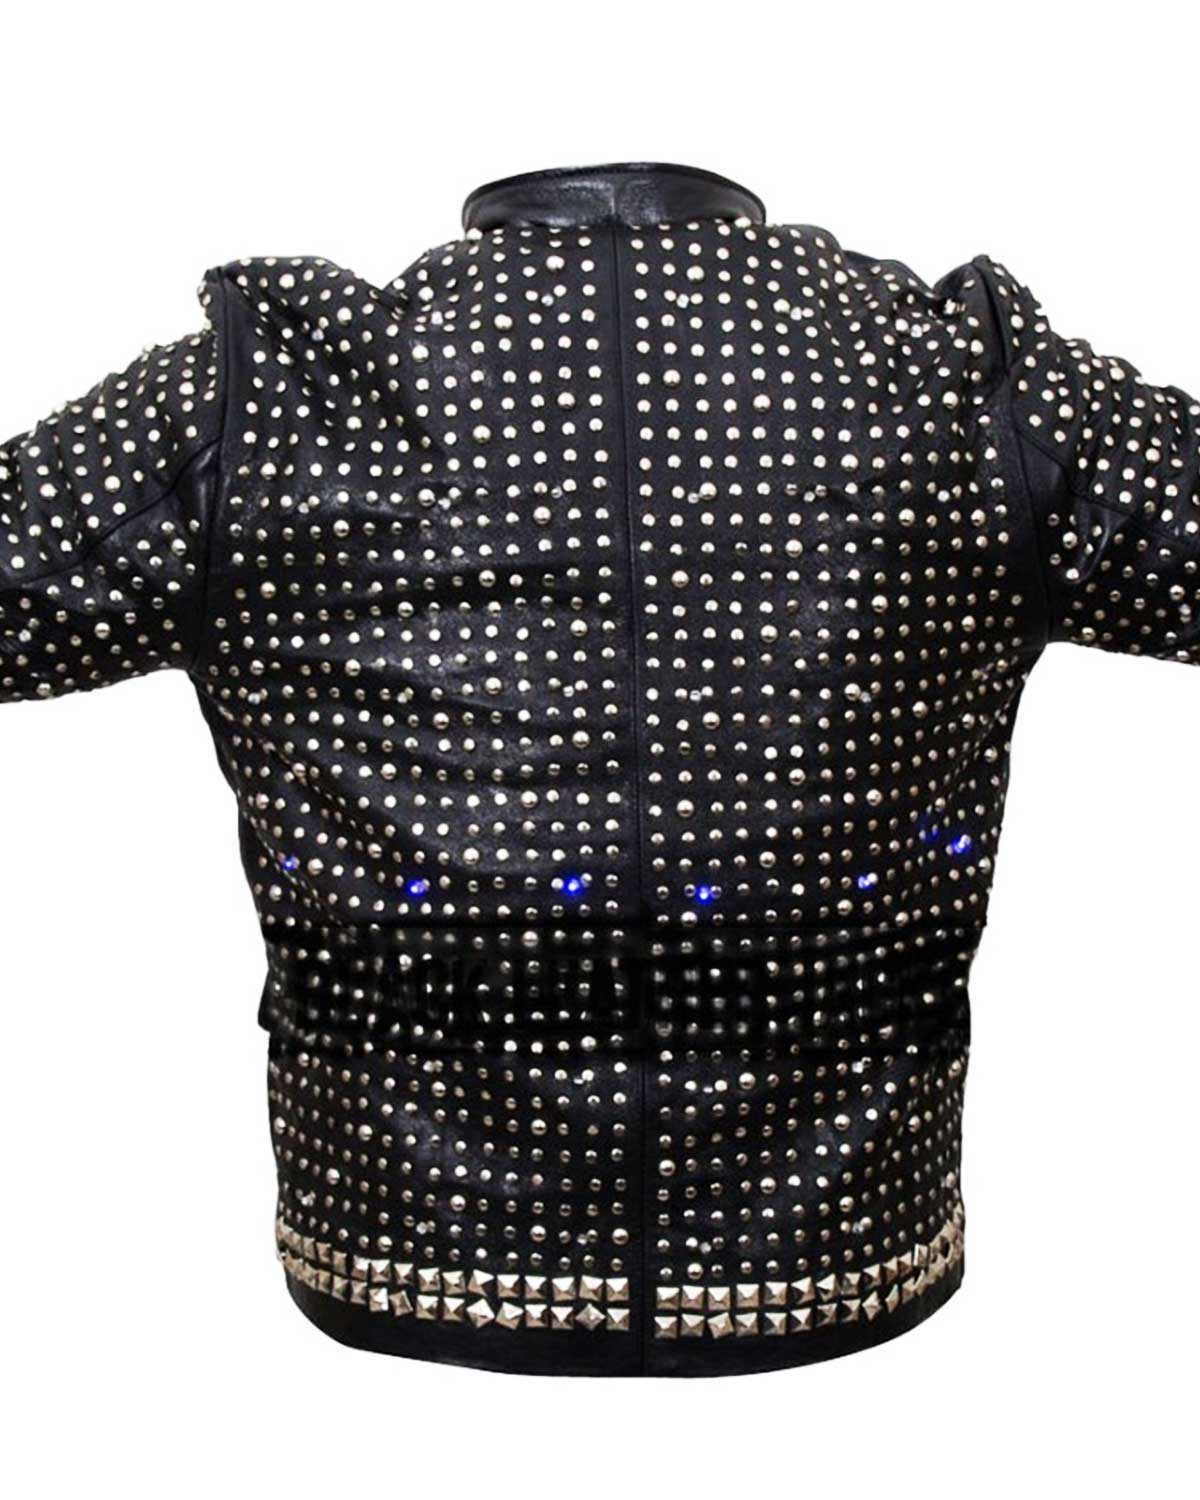 Chris Jericho WWE Light Up Black Leather Jacket | Elite Jacket